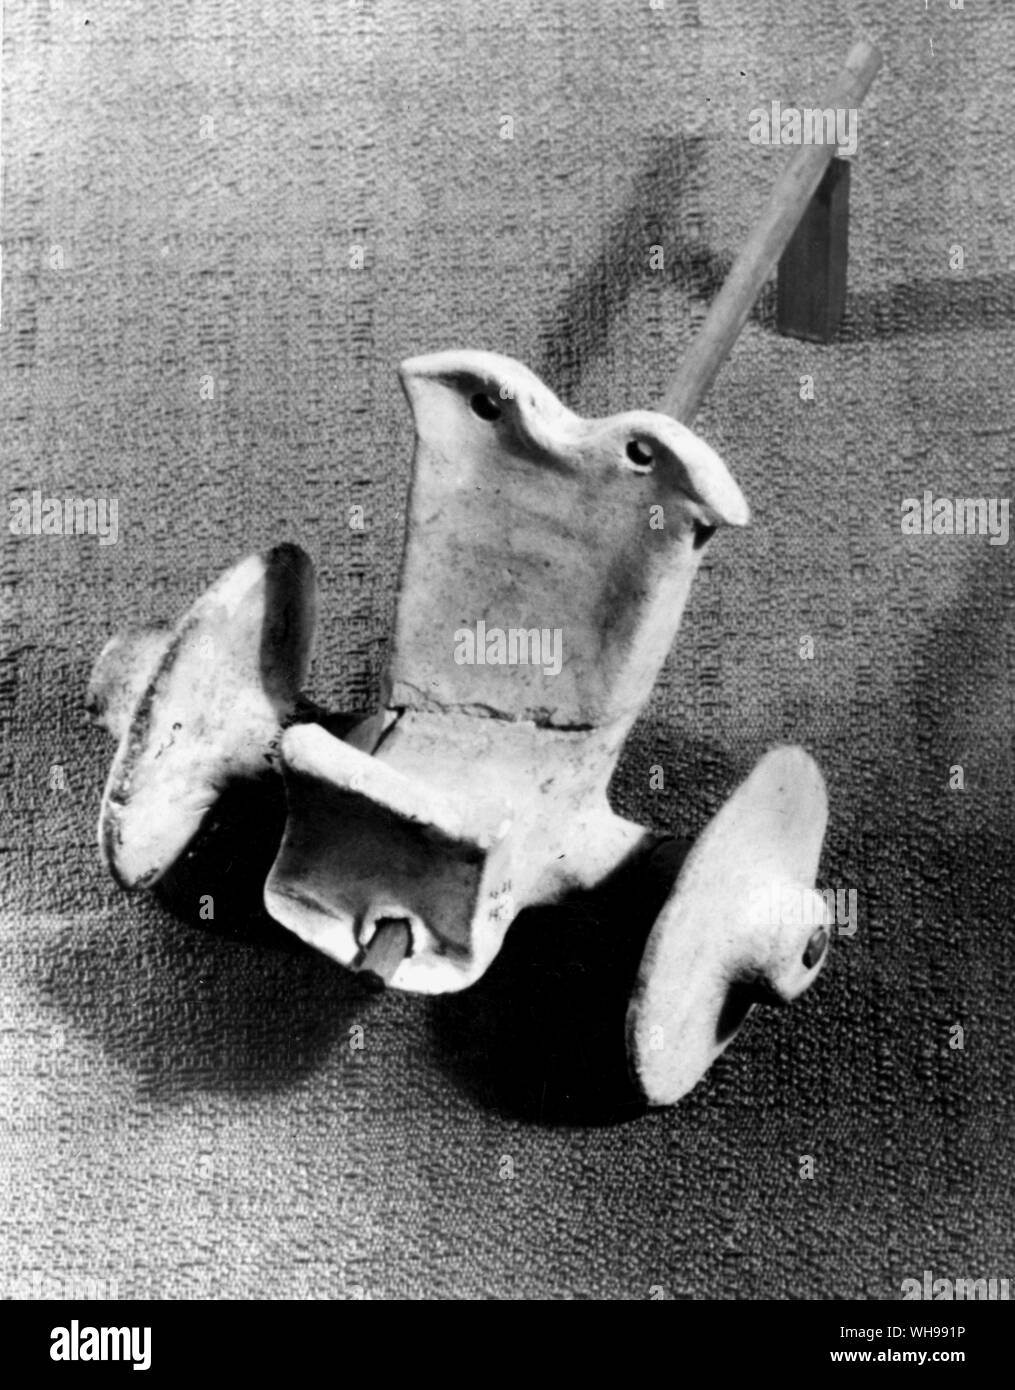 La antigua guerra: un modelo de arcilla de dos ruedas carro sumerio con sólidas ruedas y panel frontal de protección. Foto de stock